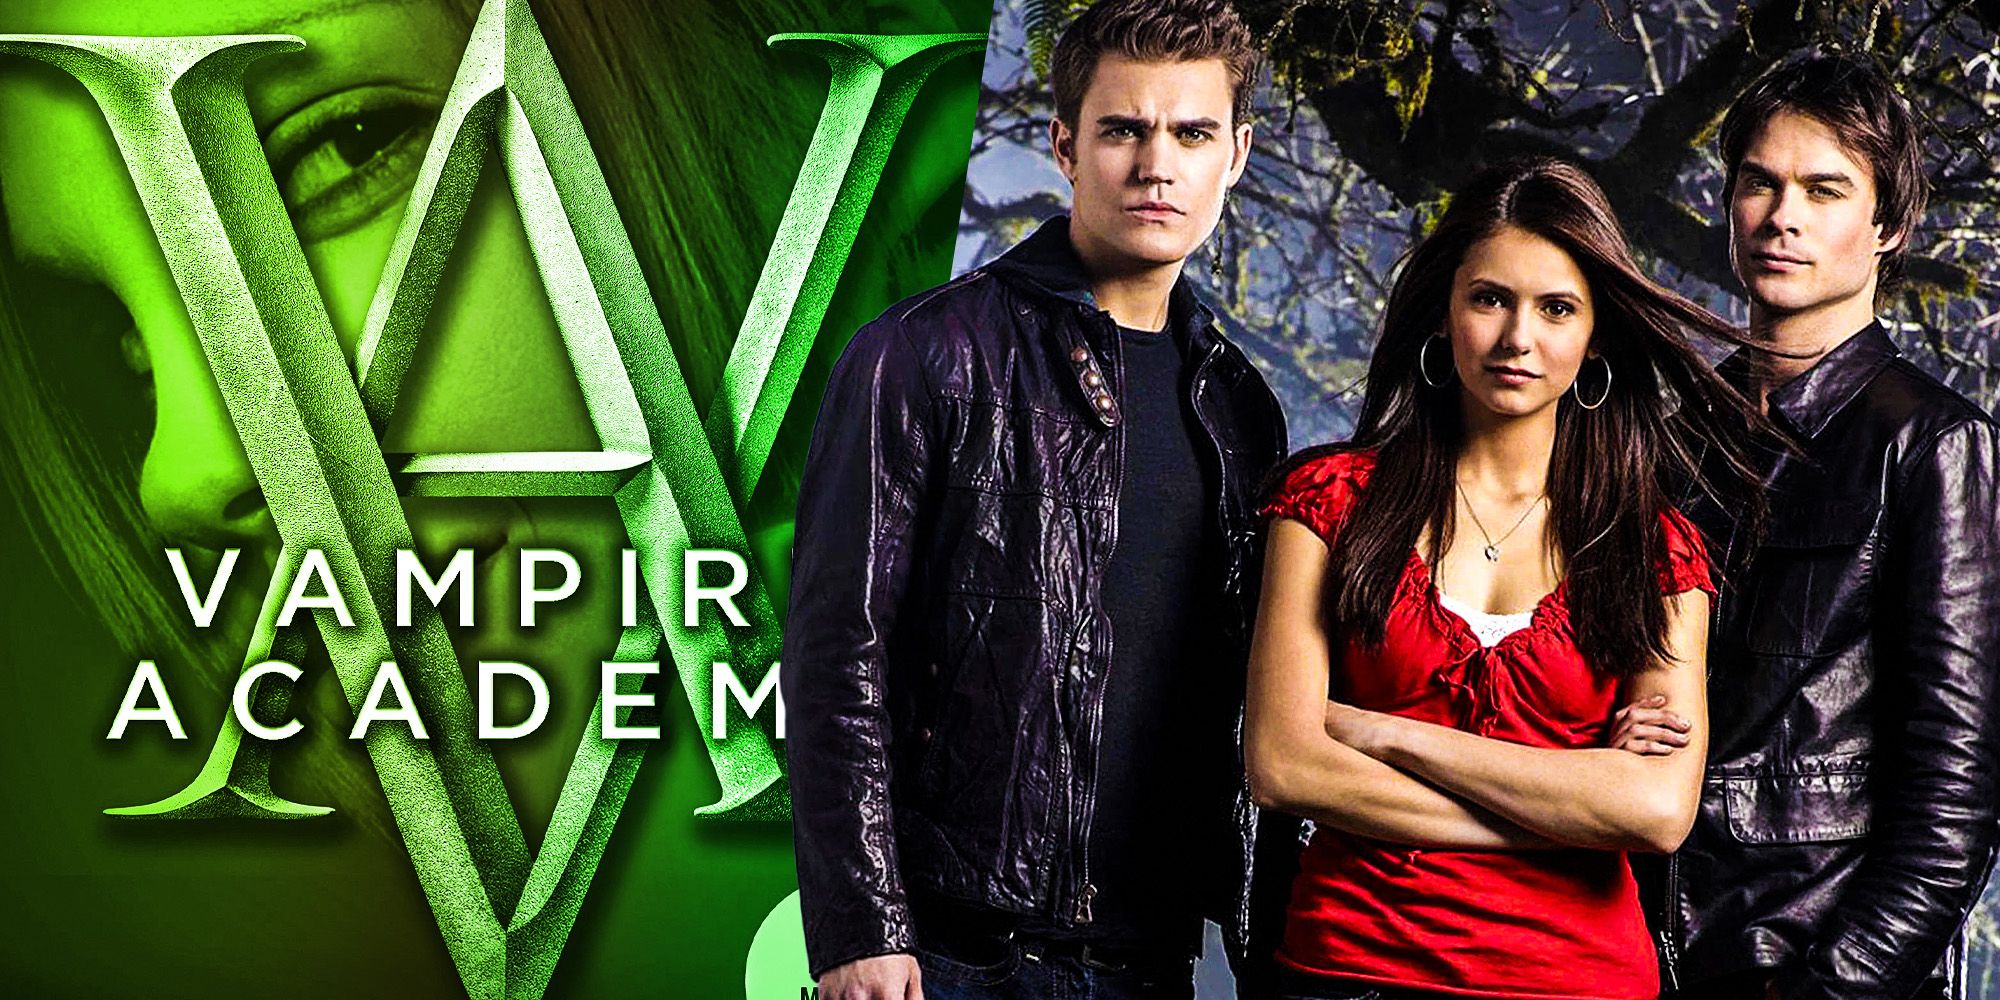 Vampire academy vs Vampire Diaries